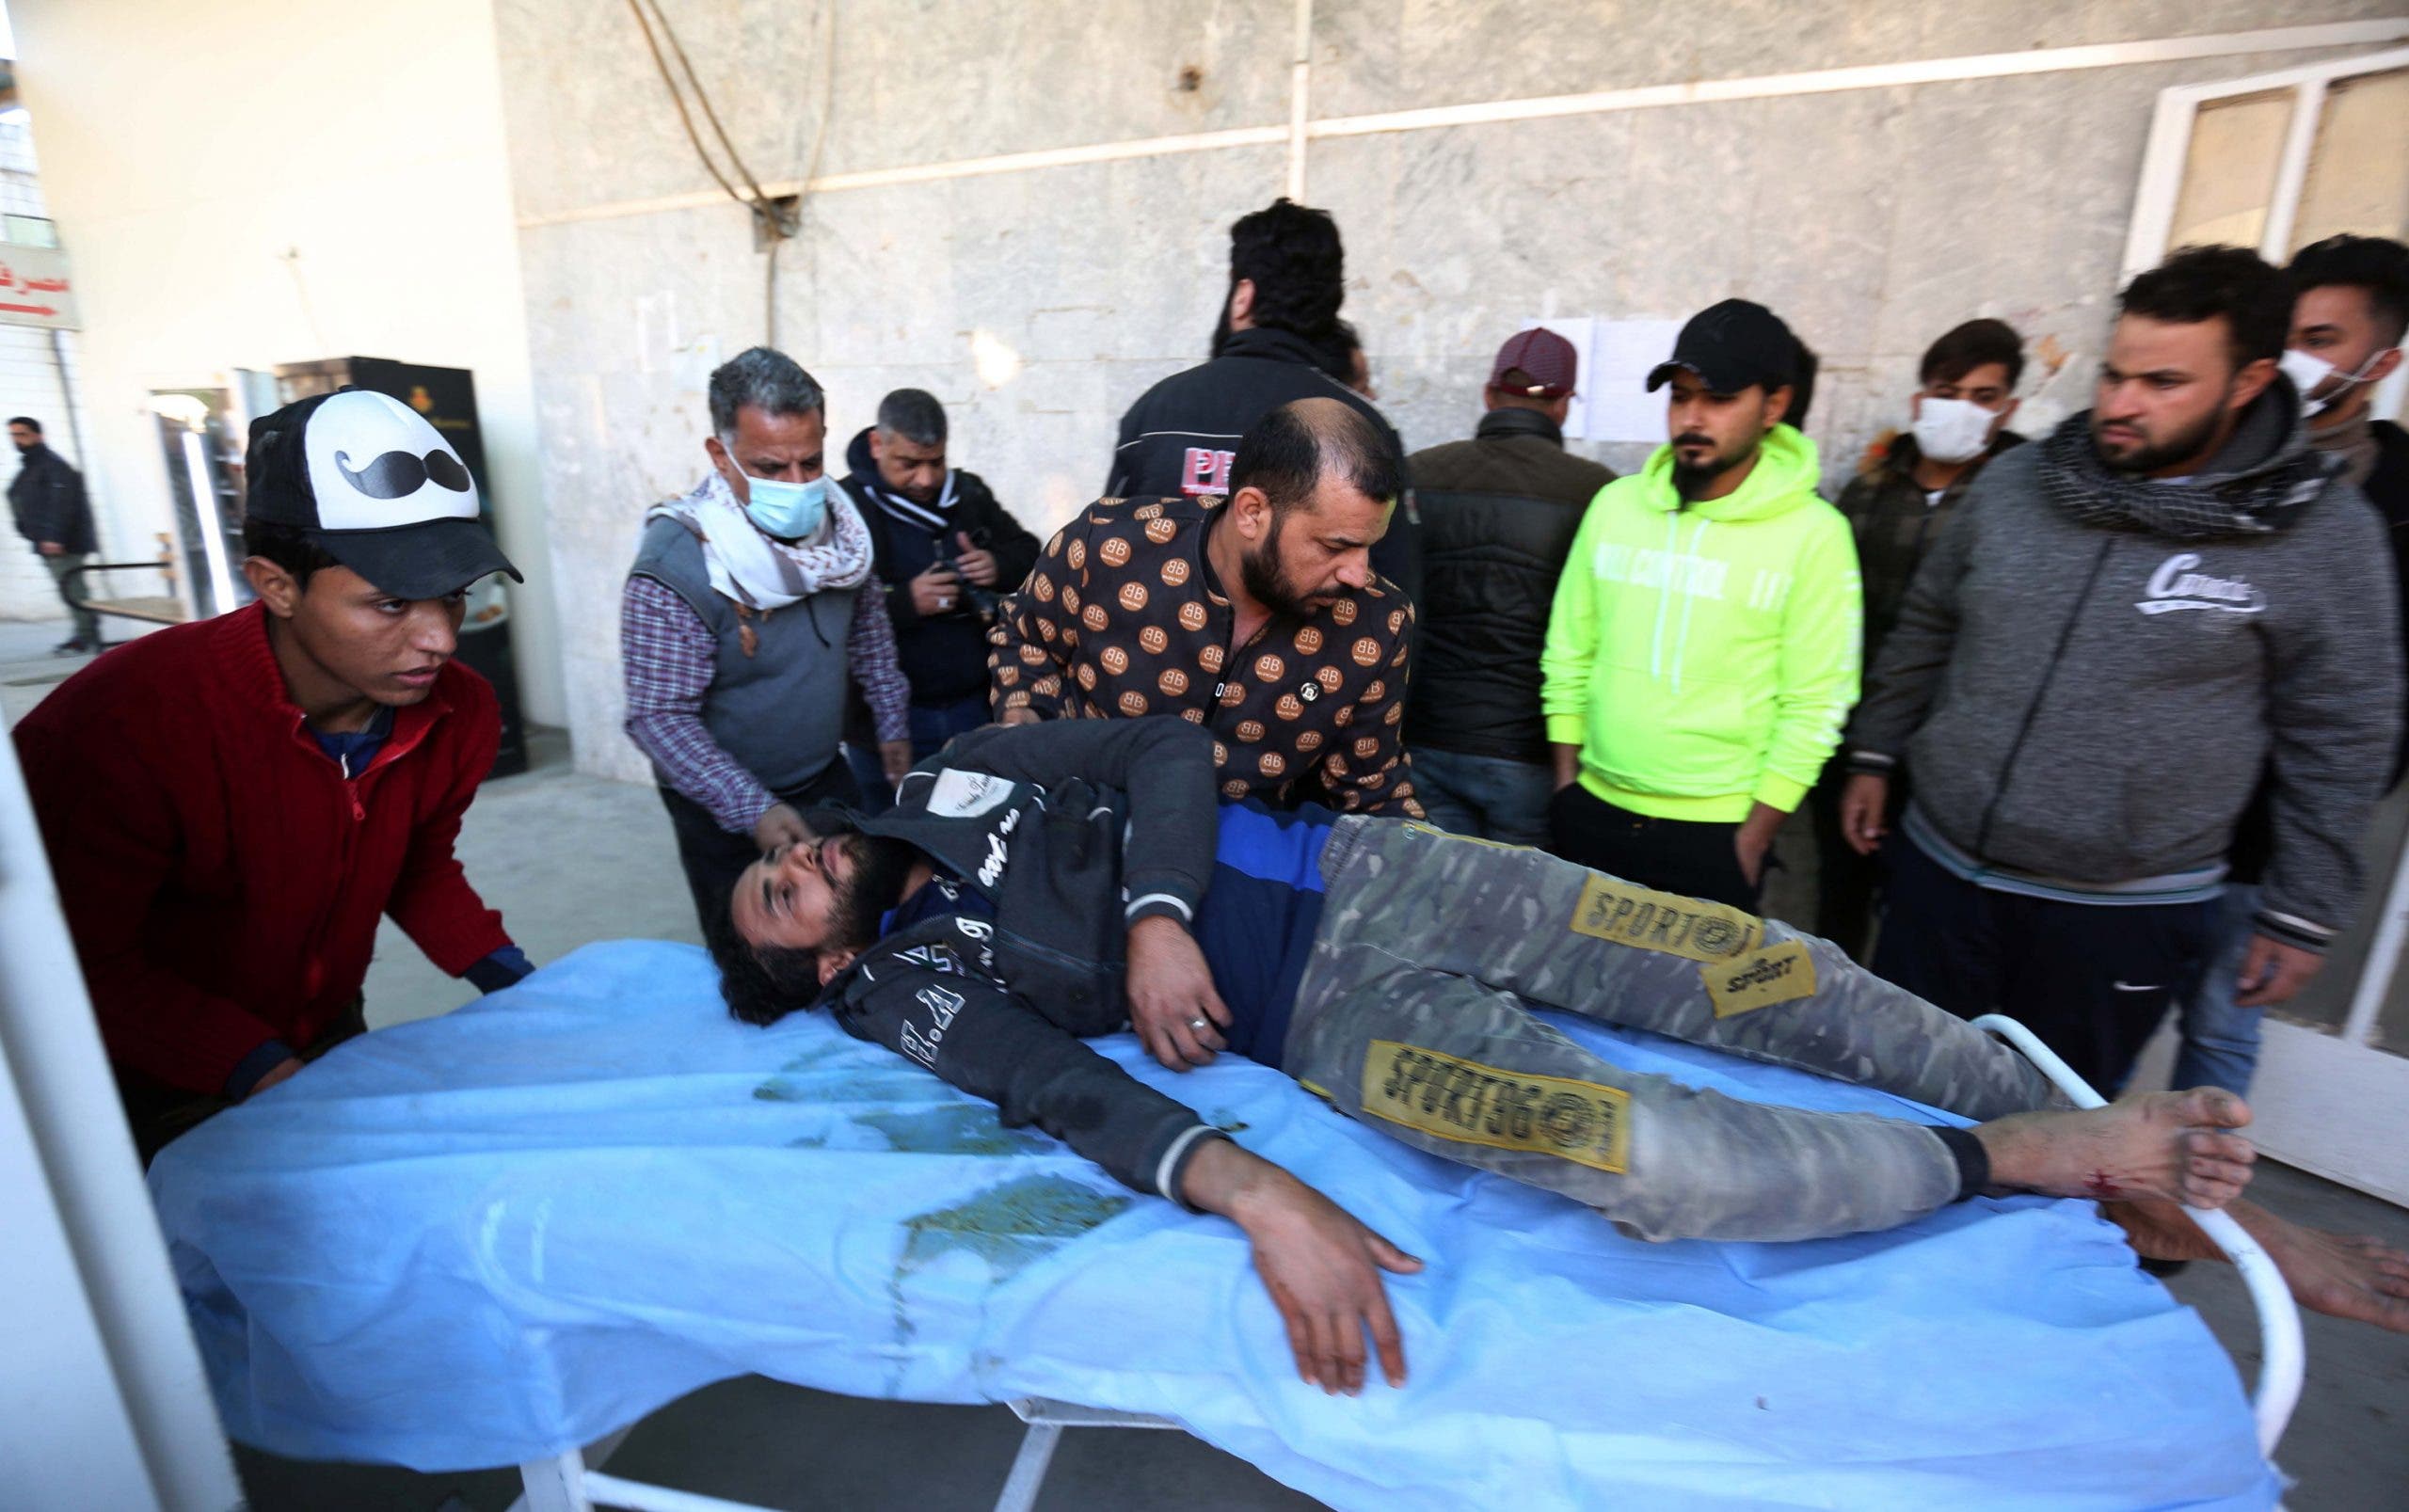 Atentado suicida en mercado de Bagdad causa al menos 32 muertos y 110 heridos